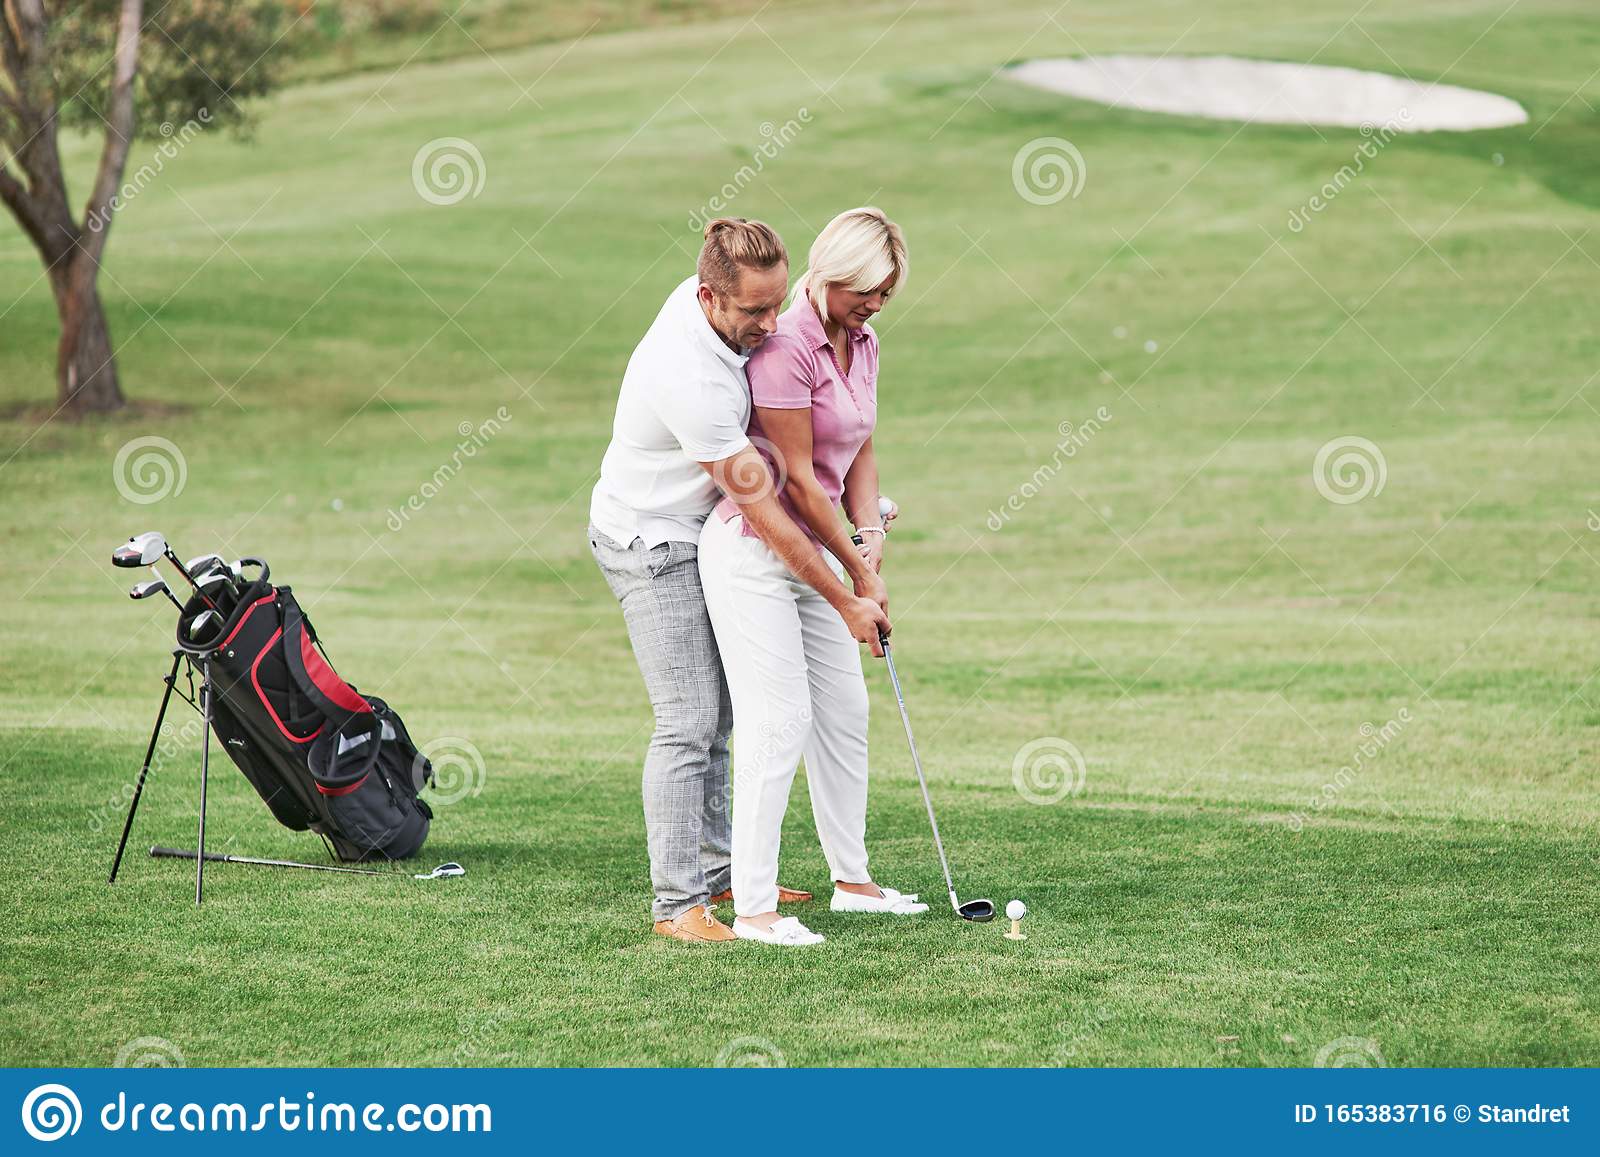 Учит играть в гольф. Мужчина женщина гольф. Мужчина и женщина играют в гольф. Гольф мужчина учит. Женщина играет в гольф.